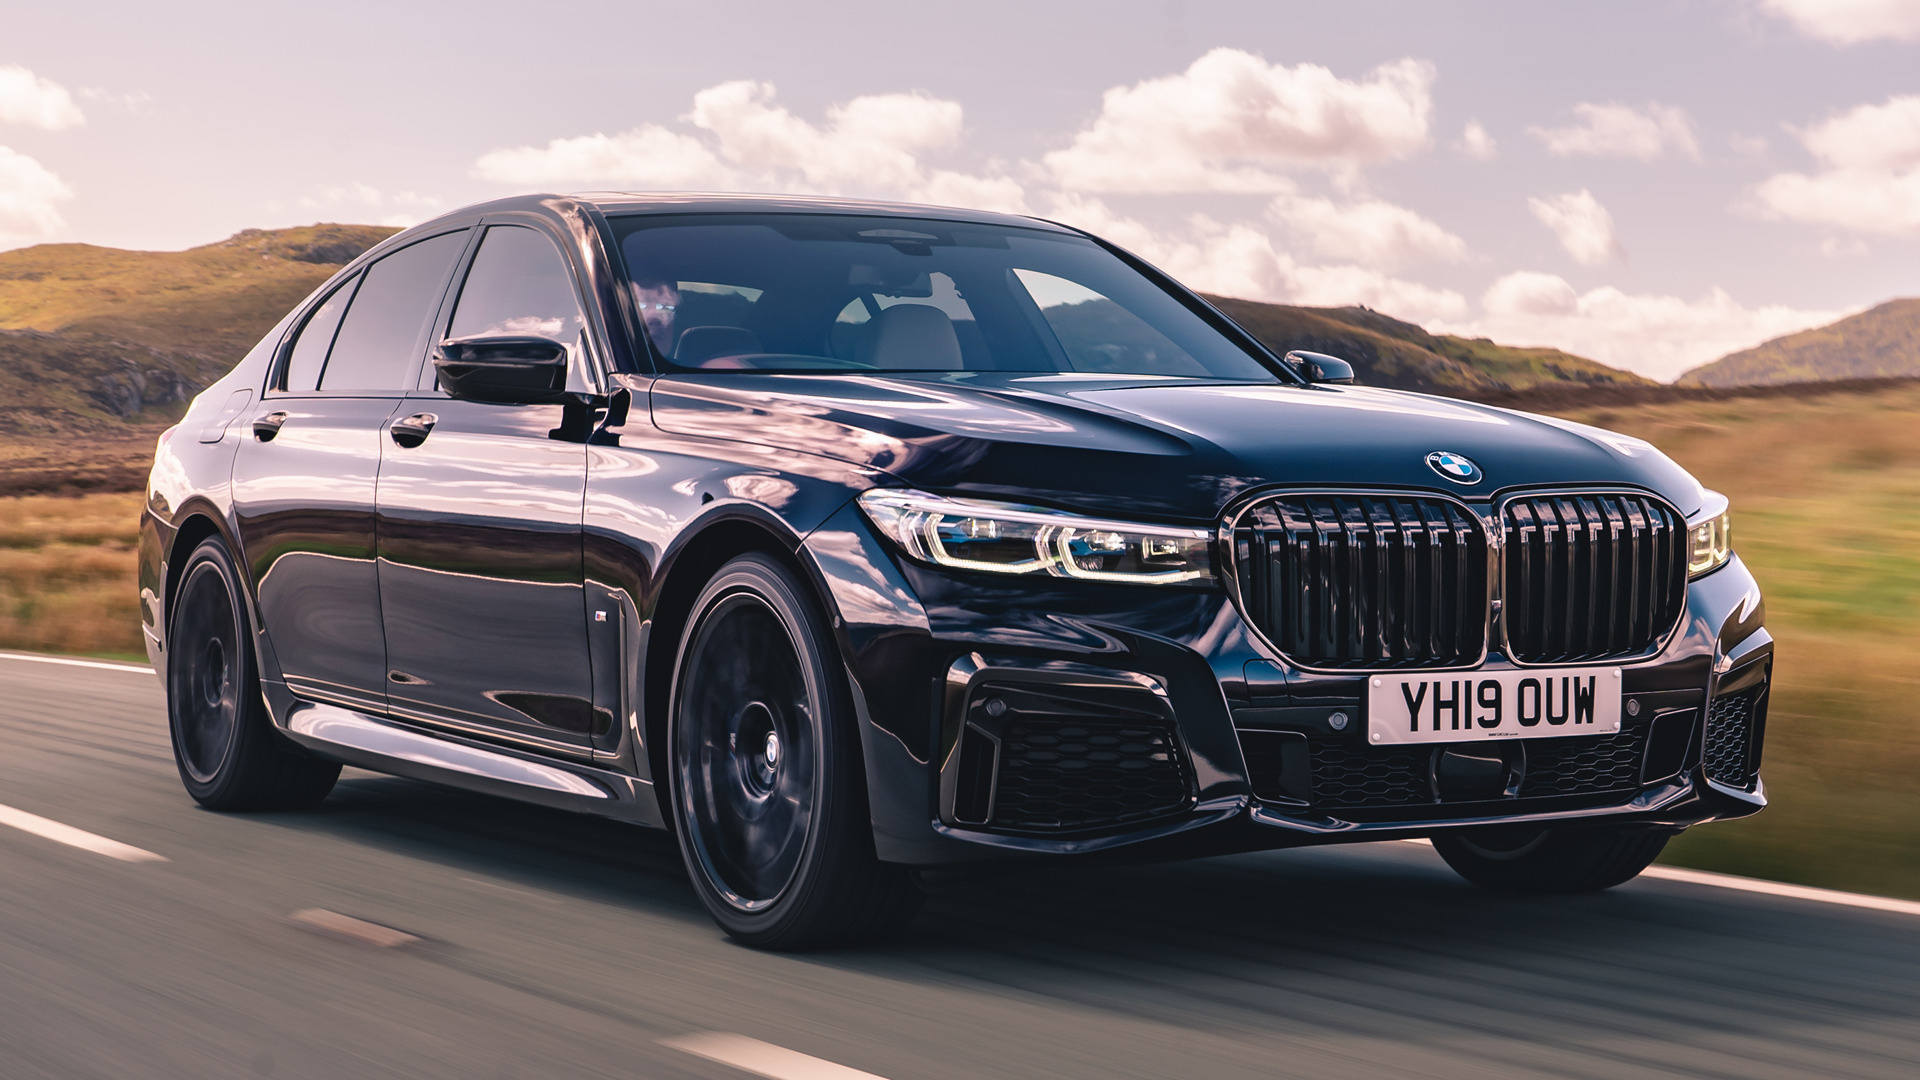 2019 BMW 7 Series M Sport, UK hintergrundbilder und, HD image showcase, True automotive masterpiece, 1920x1080 Full HD Desktop